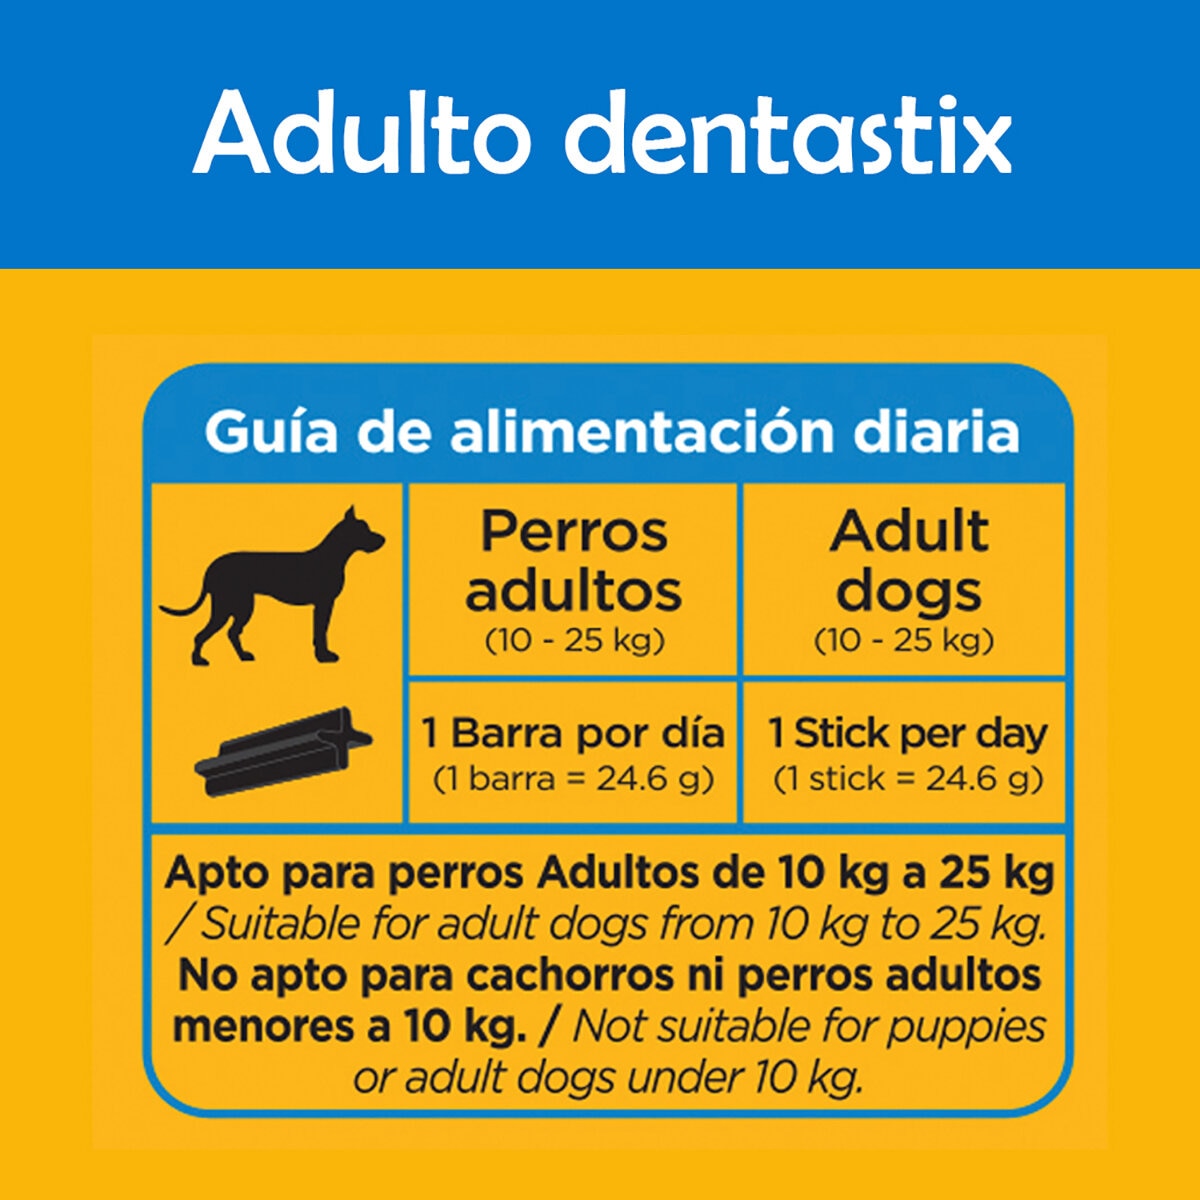 Pedigree Dentastix Cuidado Oral Diario 30 pzas